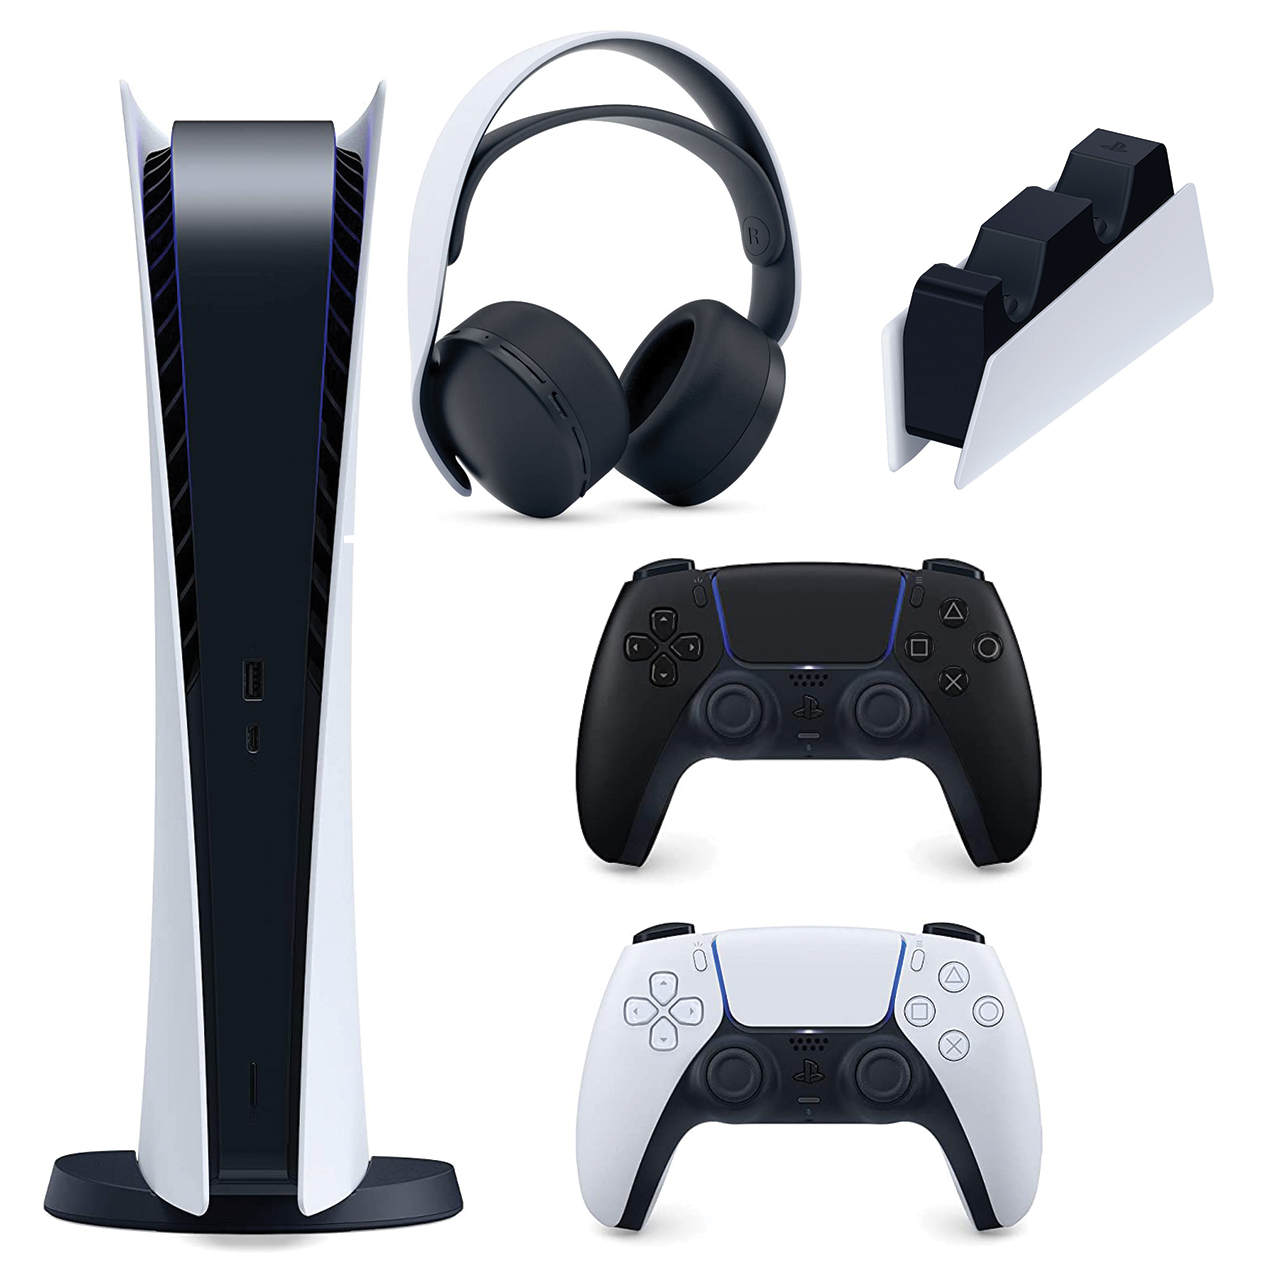 نکته خرید - قیمت روز مجموعه کنسول بازی سونی مدل PlayStation 5 Digital ظرفیت 825 گیگابایت به همراه هدست و پایه شارژر و دسته اضافی خرید